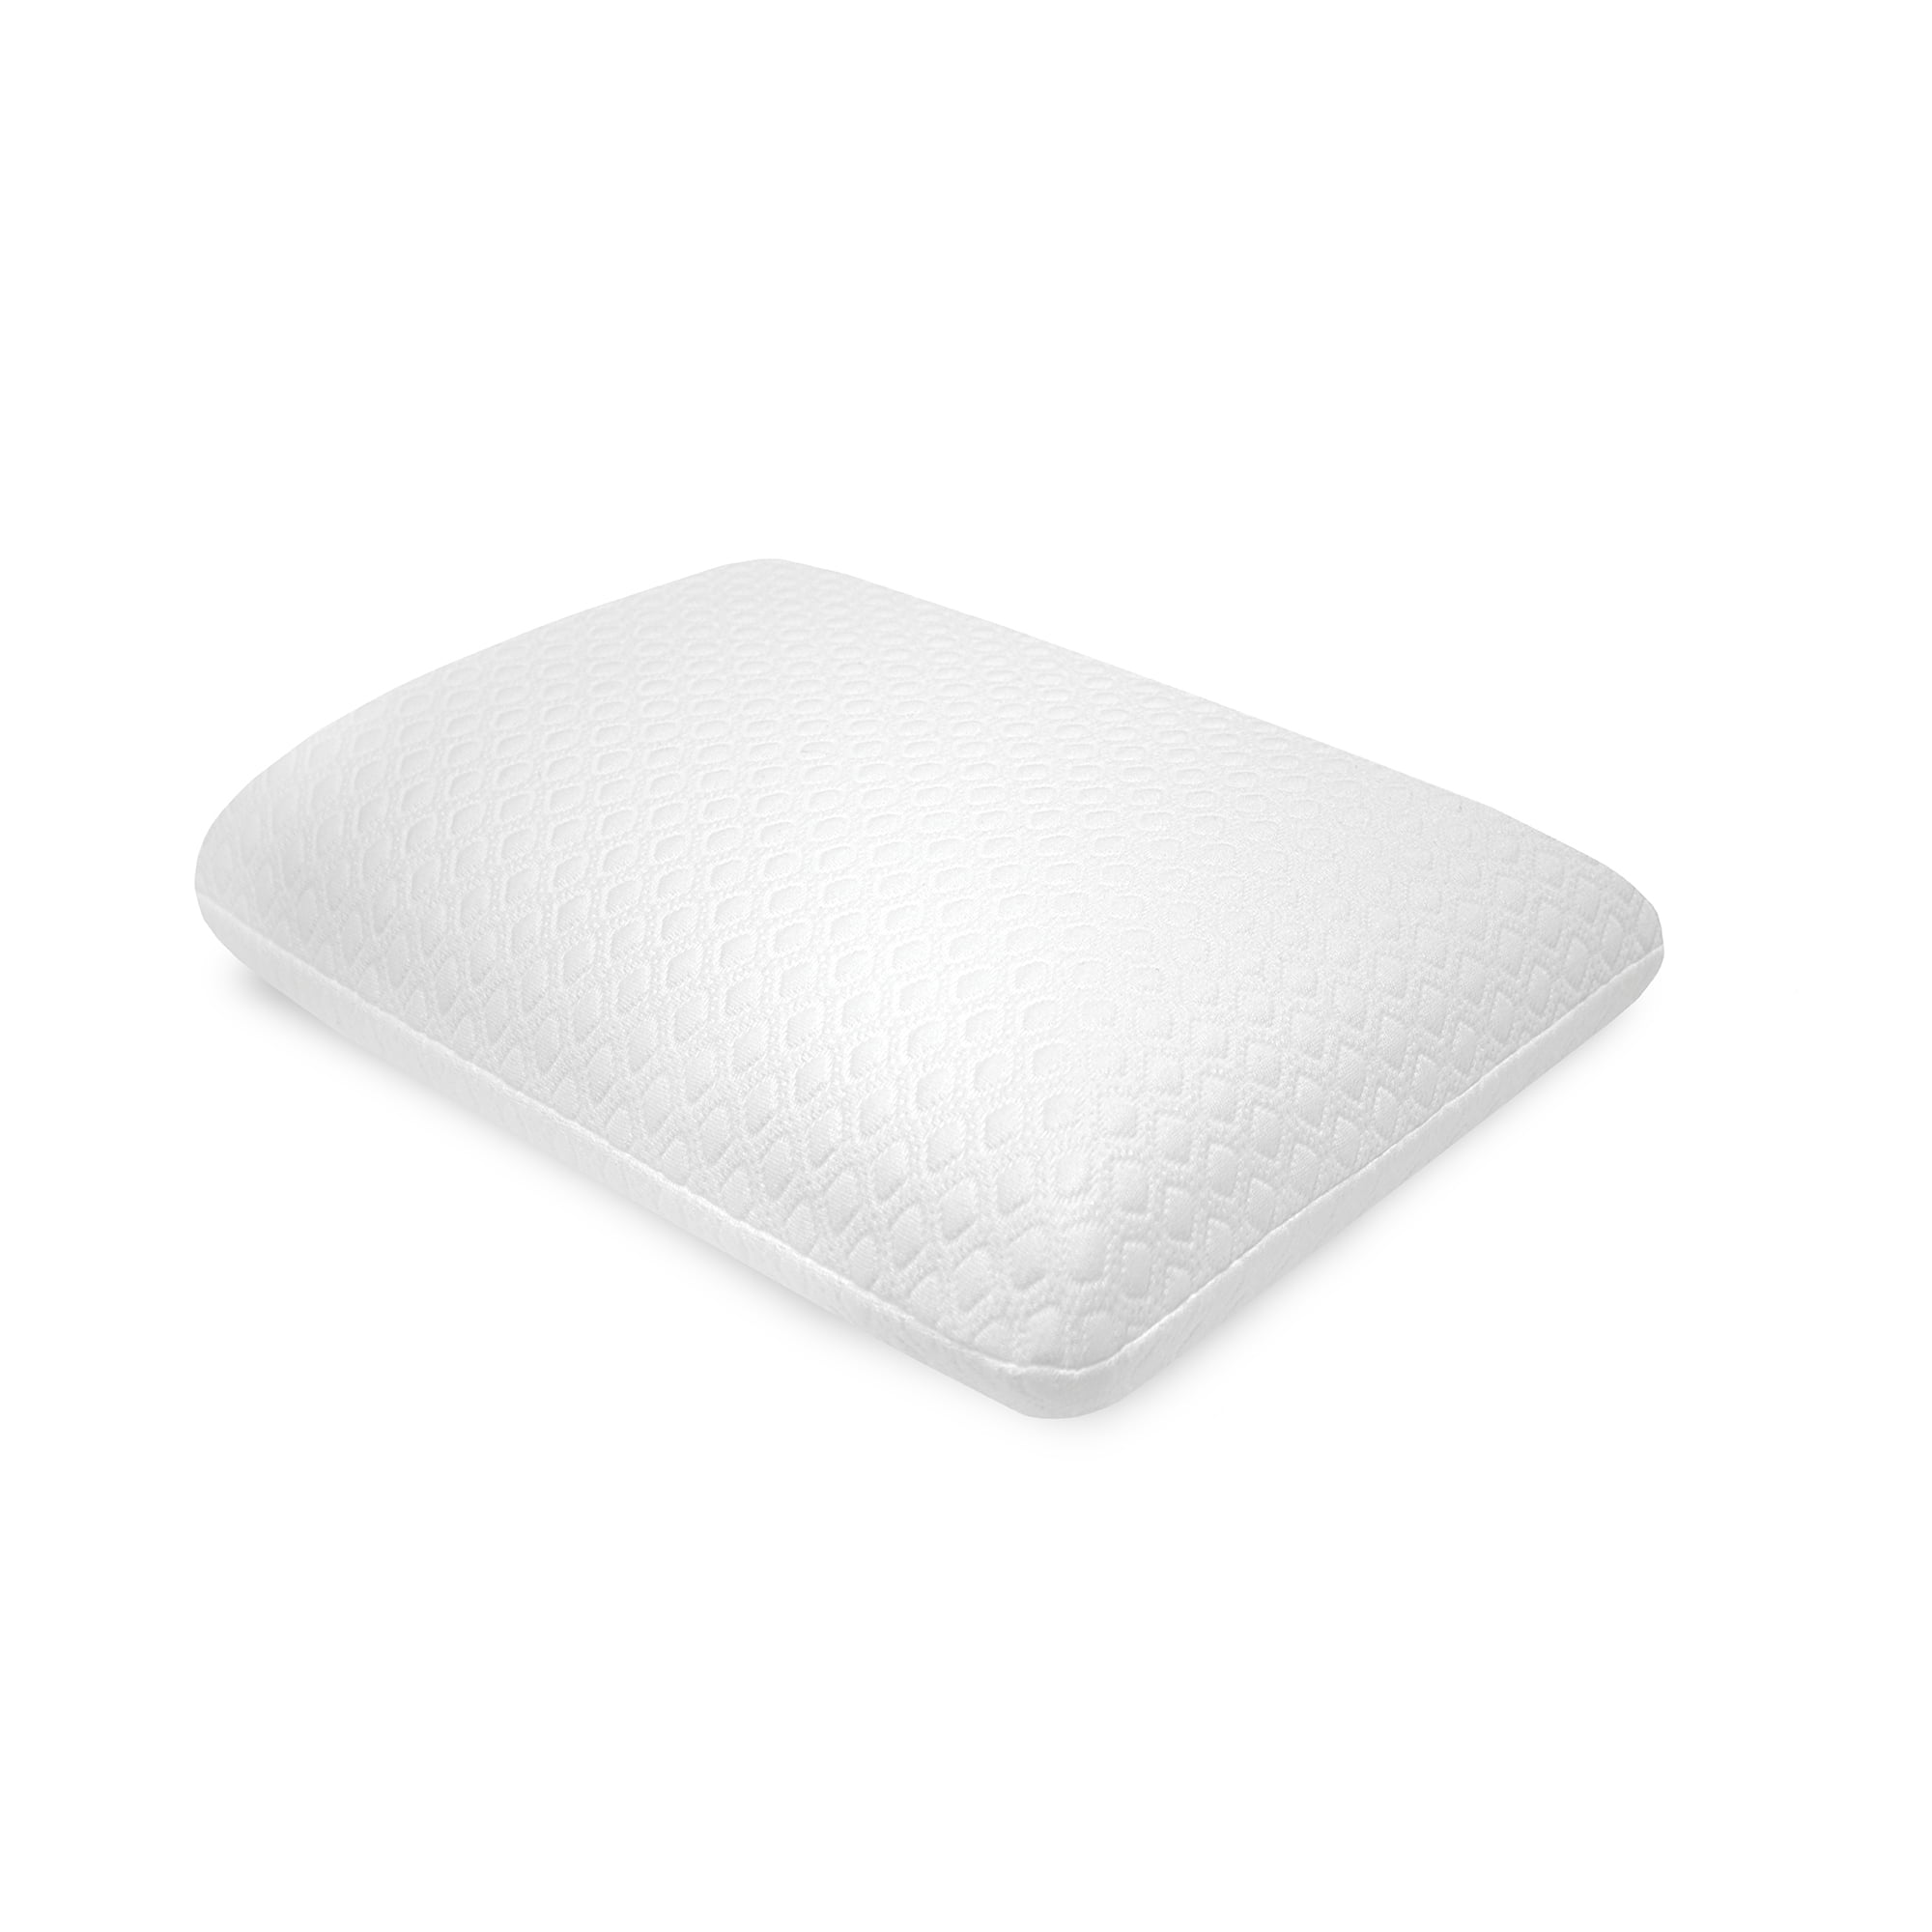 sensorpedic gel overlay memory foam pillow